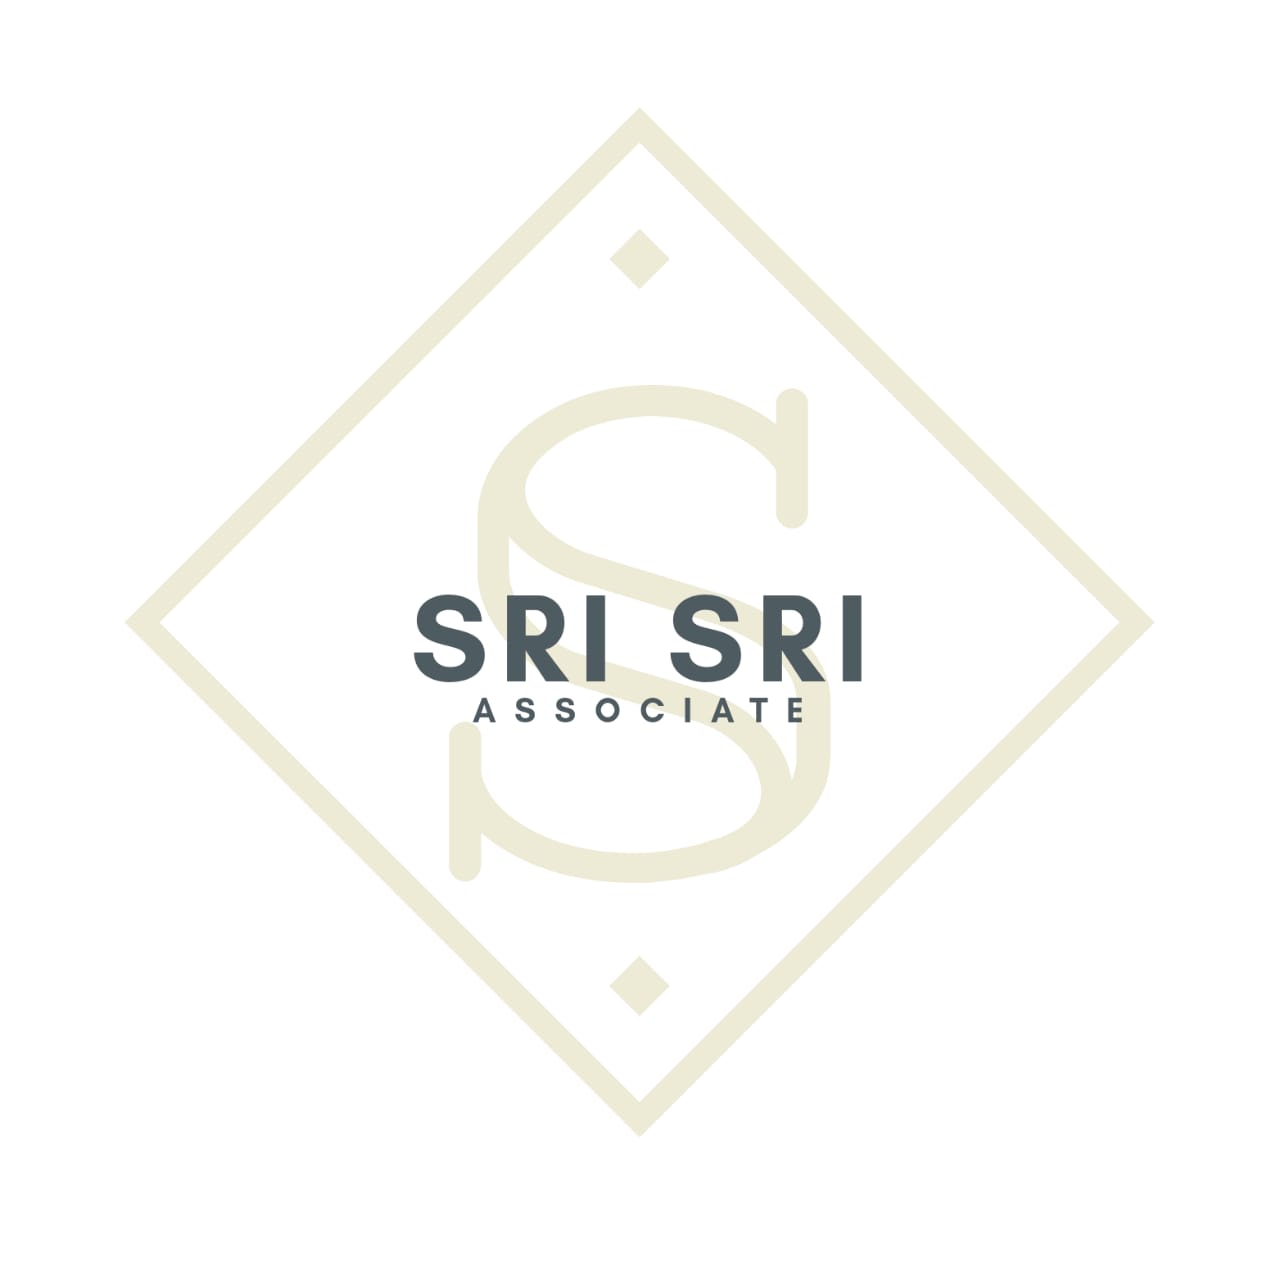 Sri Sri Associate